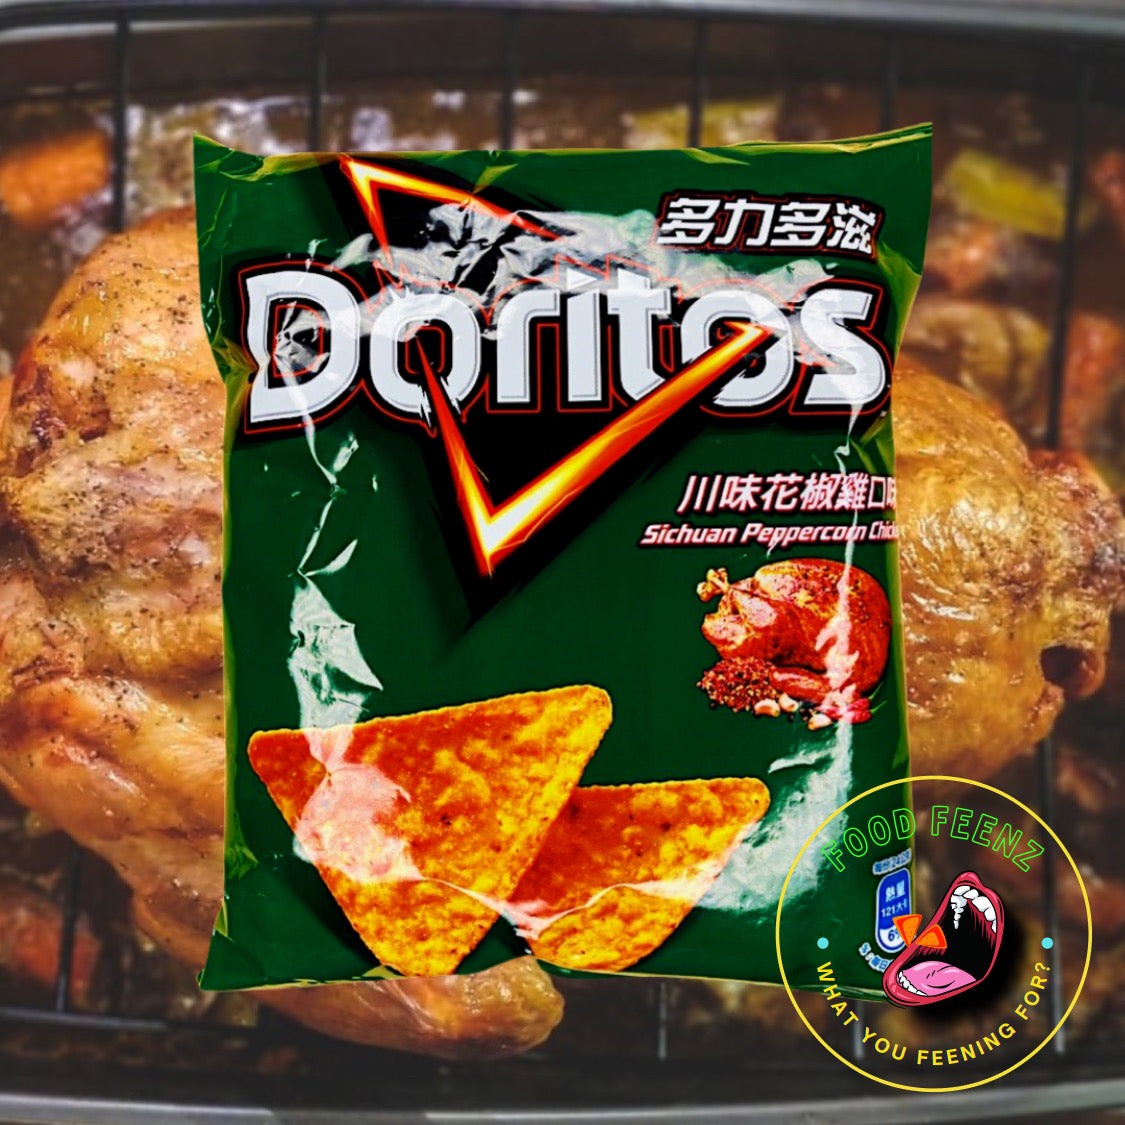 Doritos Sichuan Peppercorn Chicken (Taiwan)